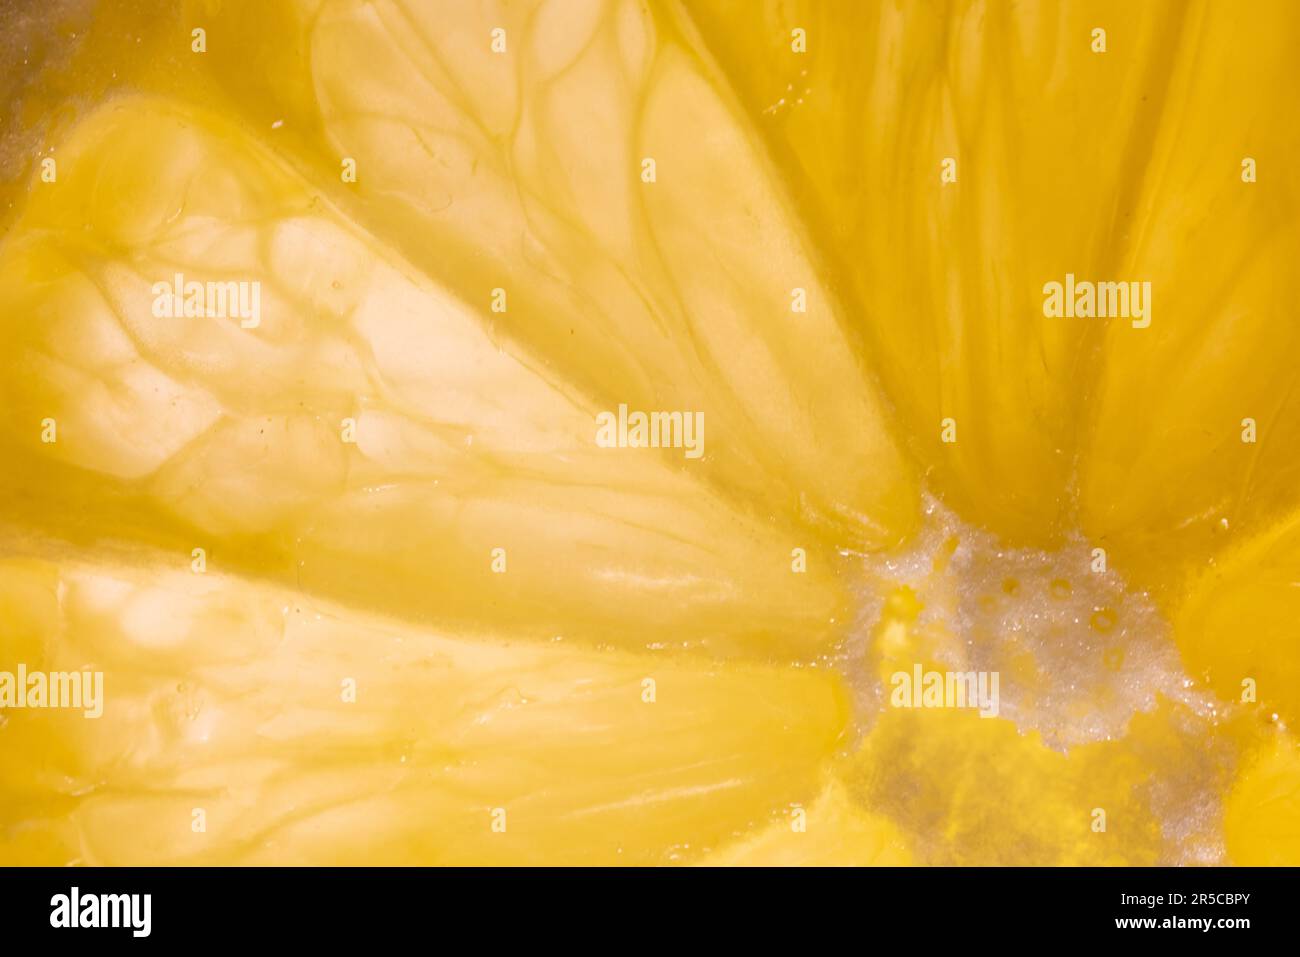 Capture macro fascinante d'une tranche de citron, rétro-éclairée avec brio, présentant ses couleurs éclatantes et sa texture complexe Banque D'Images